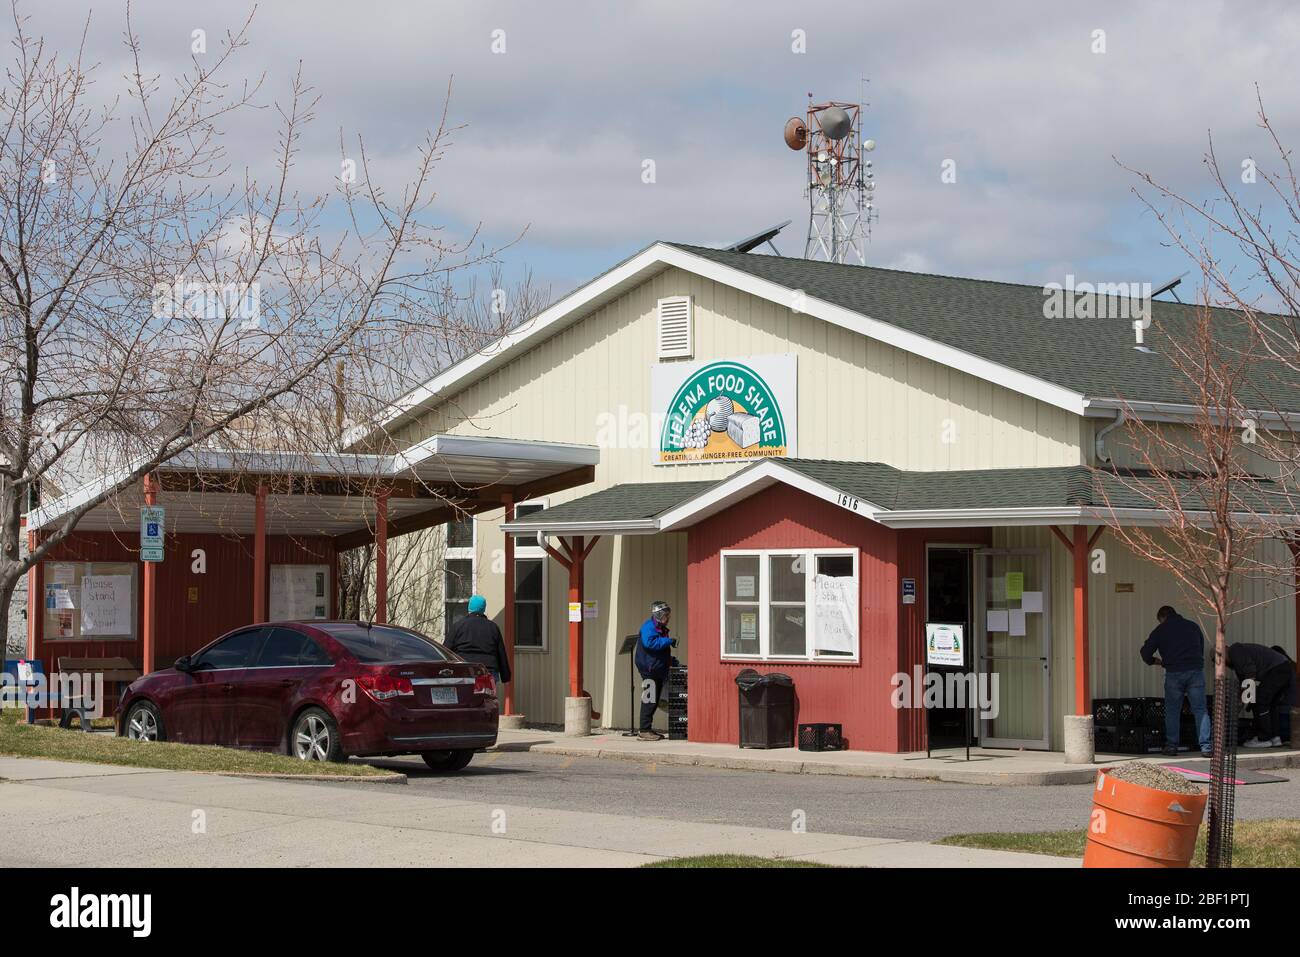 Helena, Montana - 16. April 2020: Frauen warten in der Schlange bei Helena Food Share. Hilfe für eine bedürftige Gemeinschaft während des Coronavirus Covid-19 Shutdown. Stockfoto